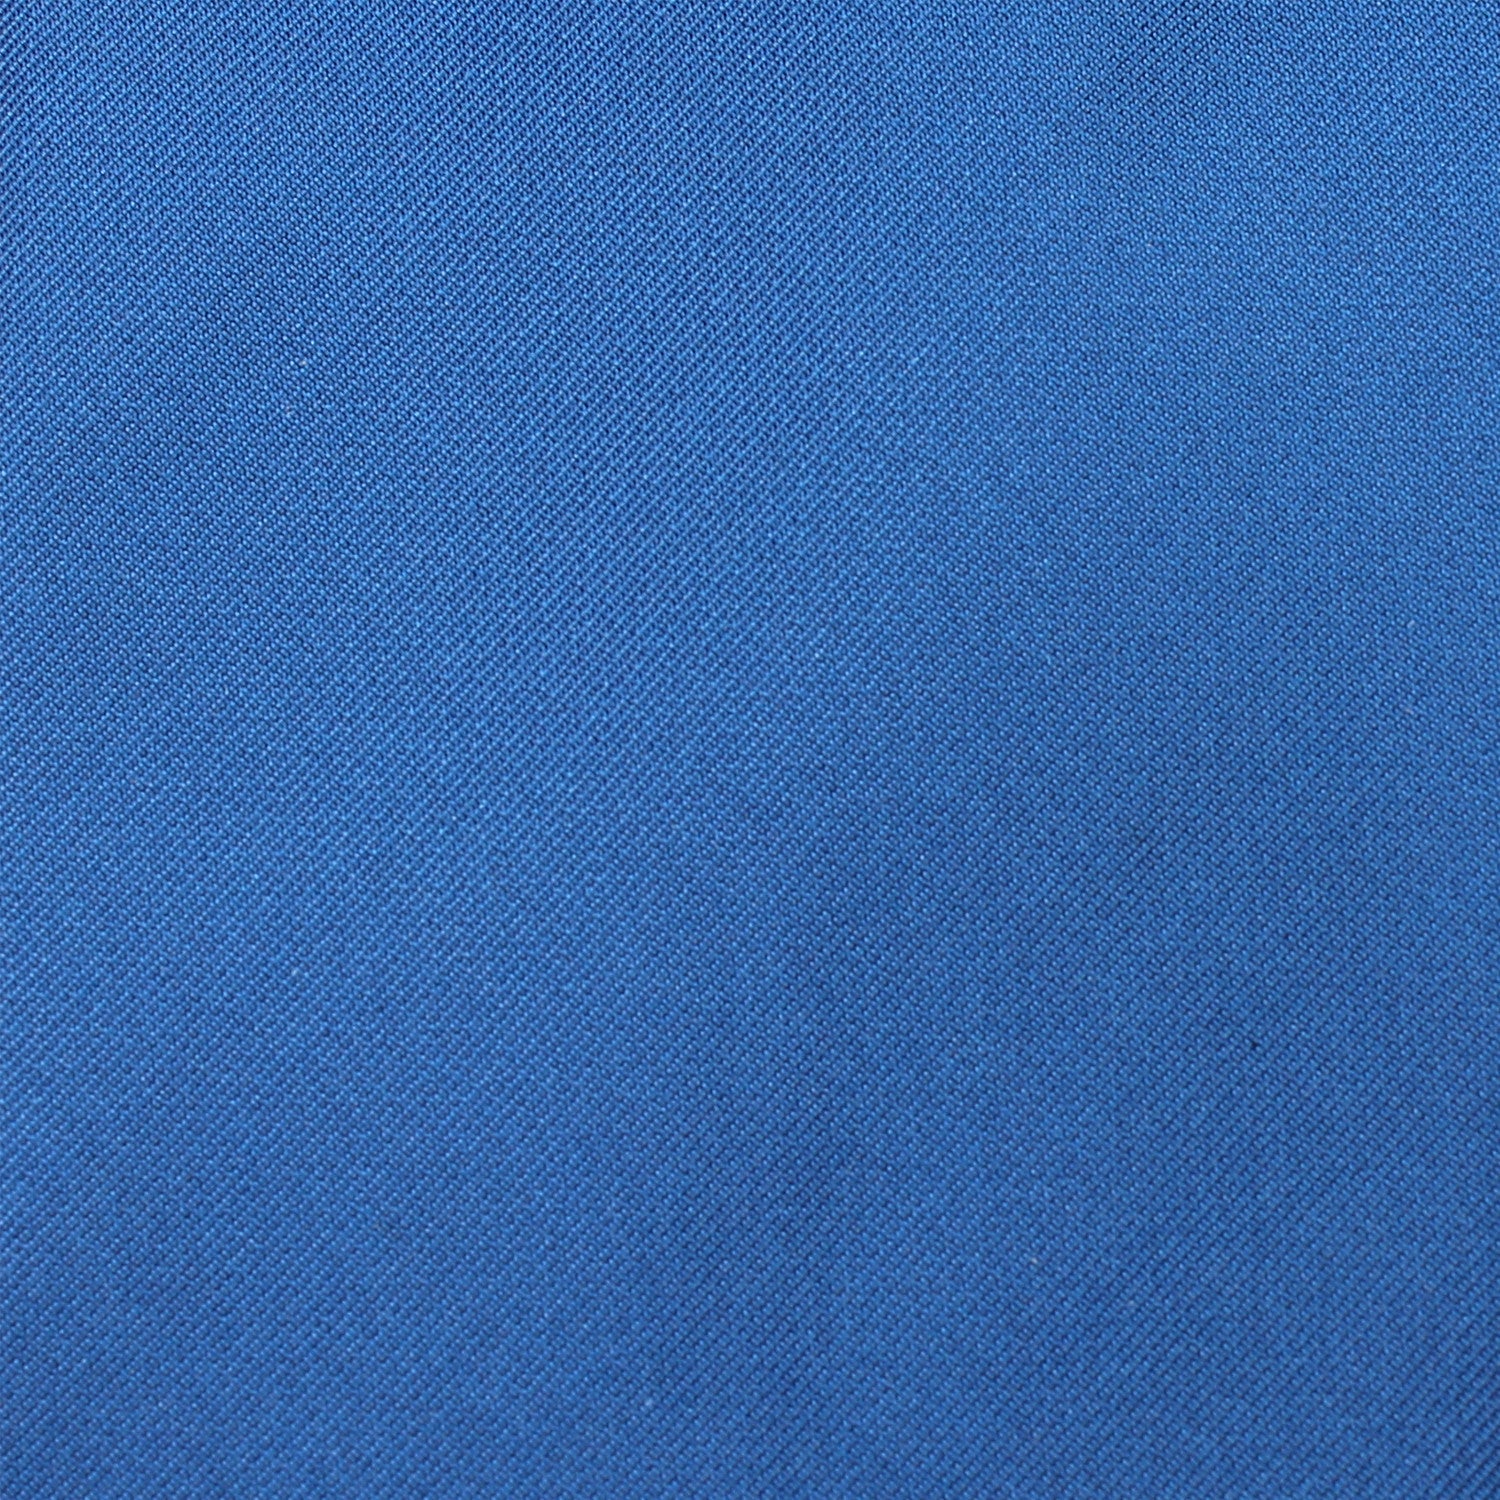 Sapphire Blue Necktie Fabric